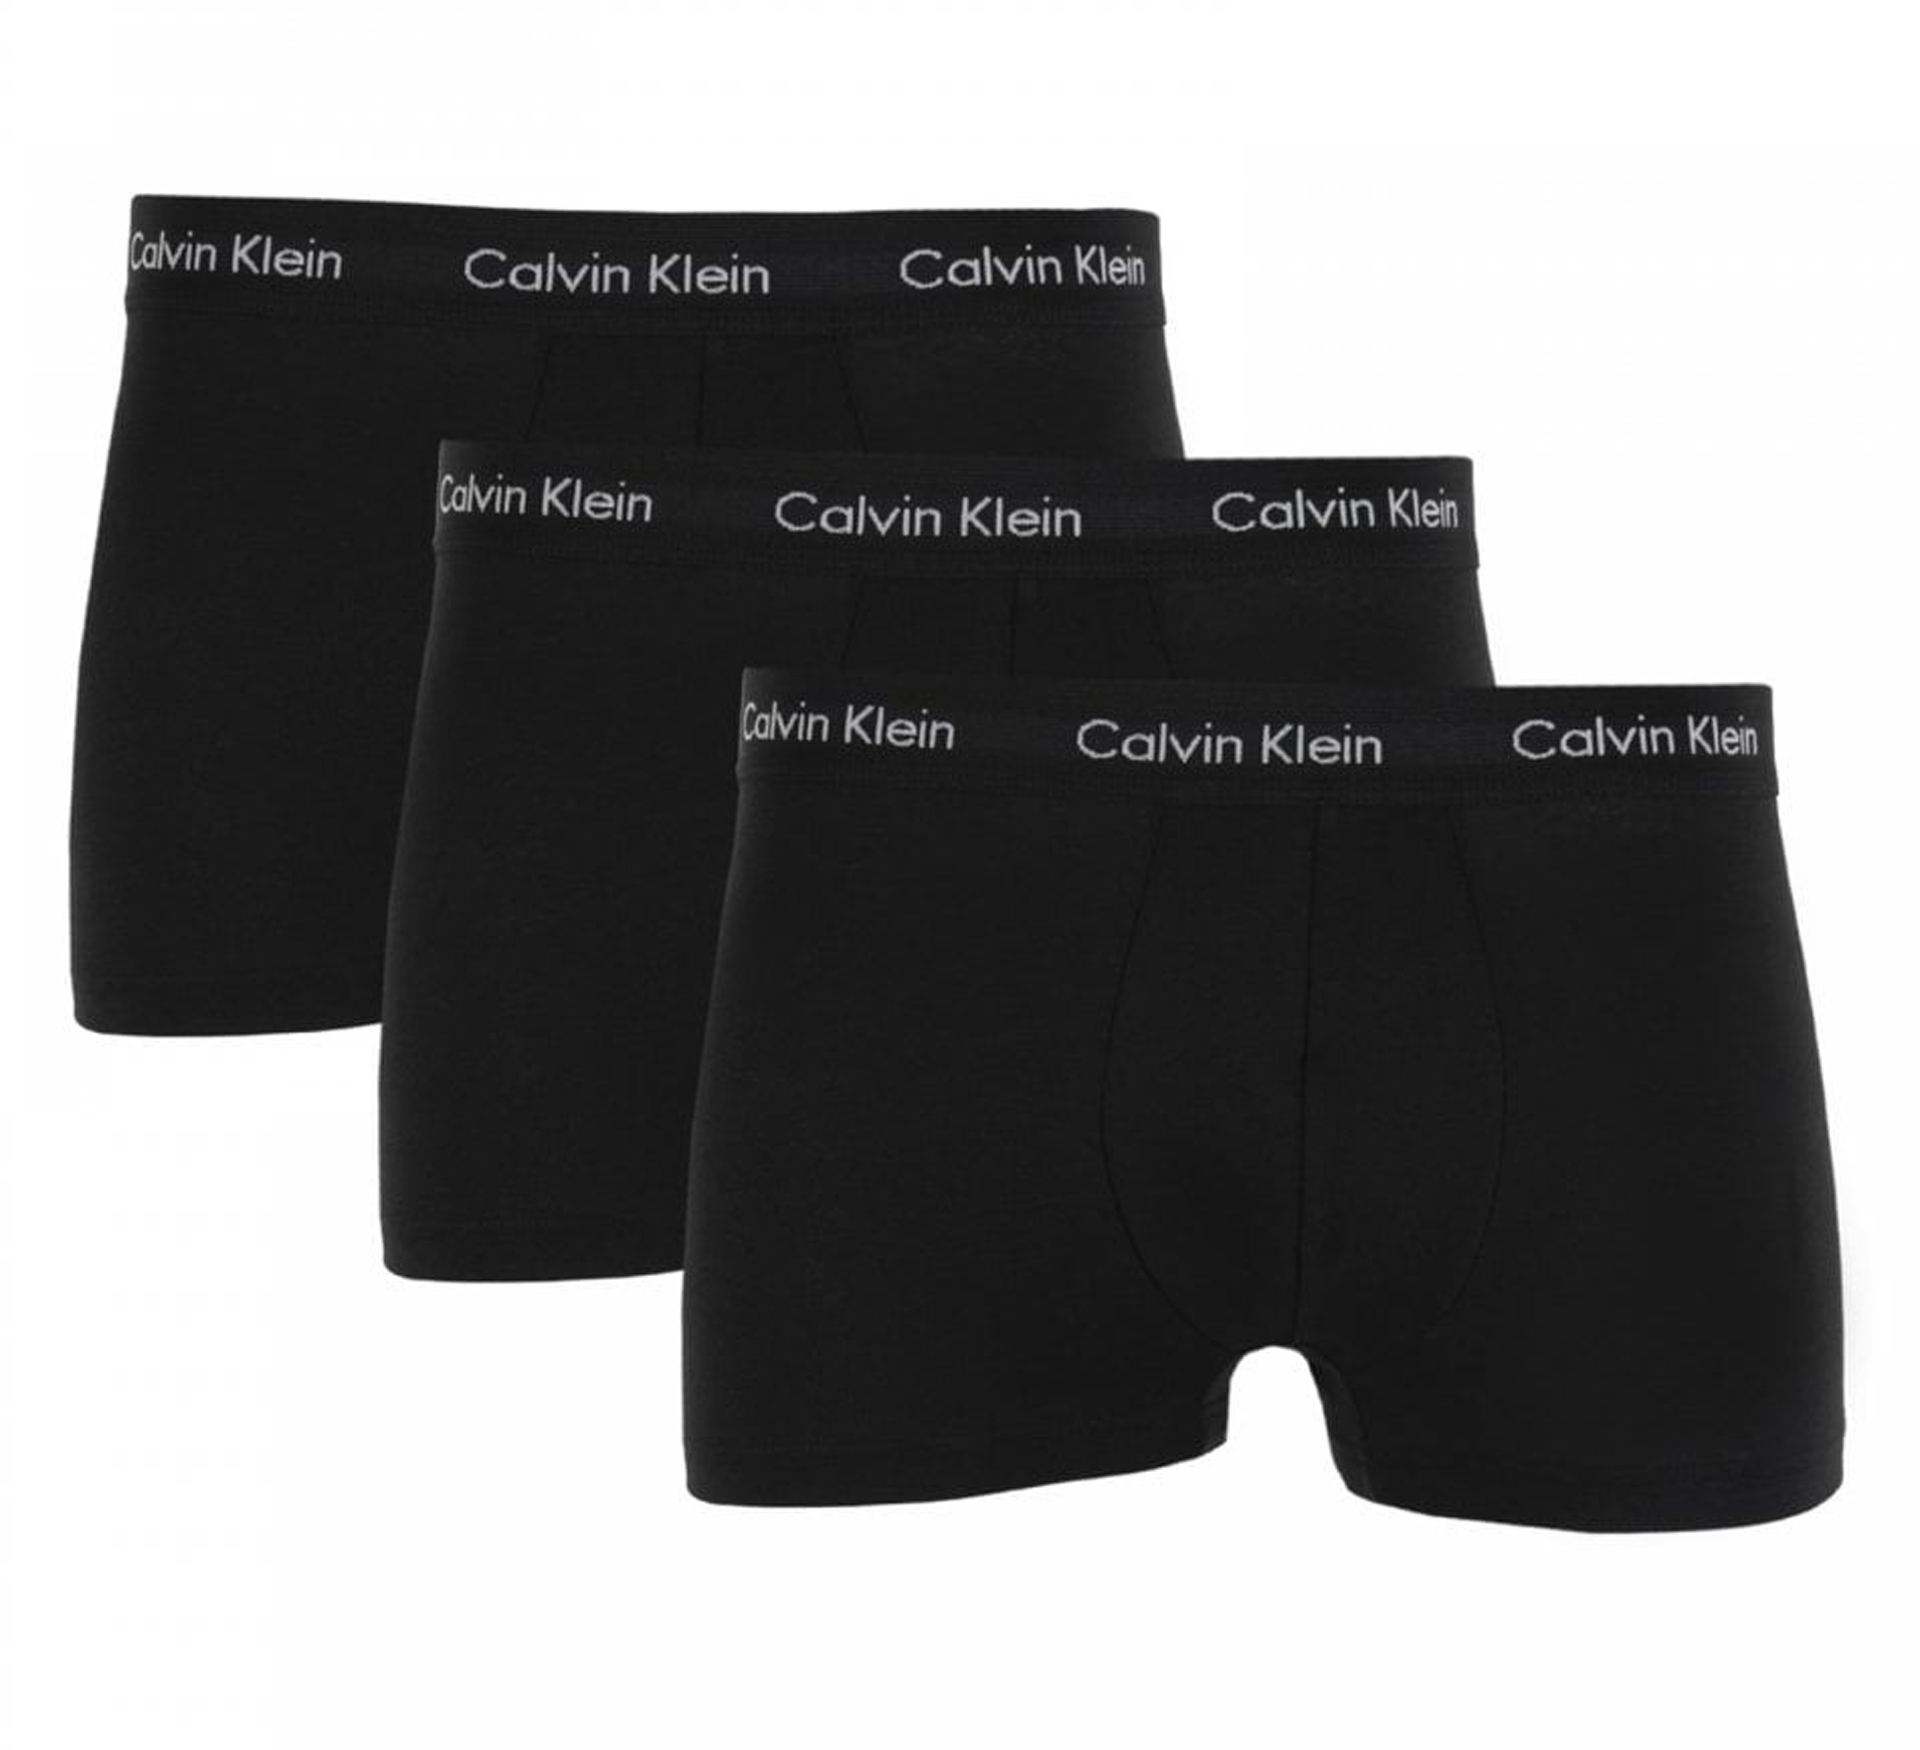 Boxer-shorts Calvin Klein Low Rise (Lot de 3)